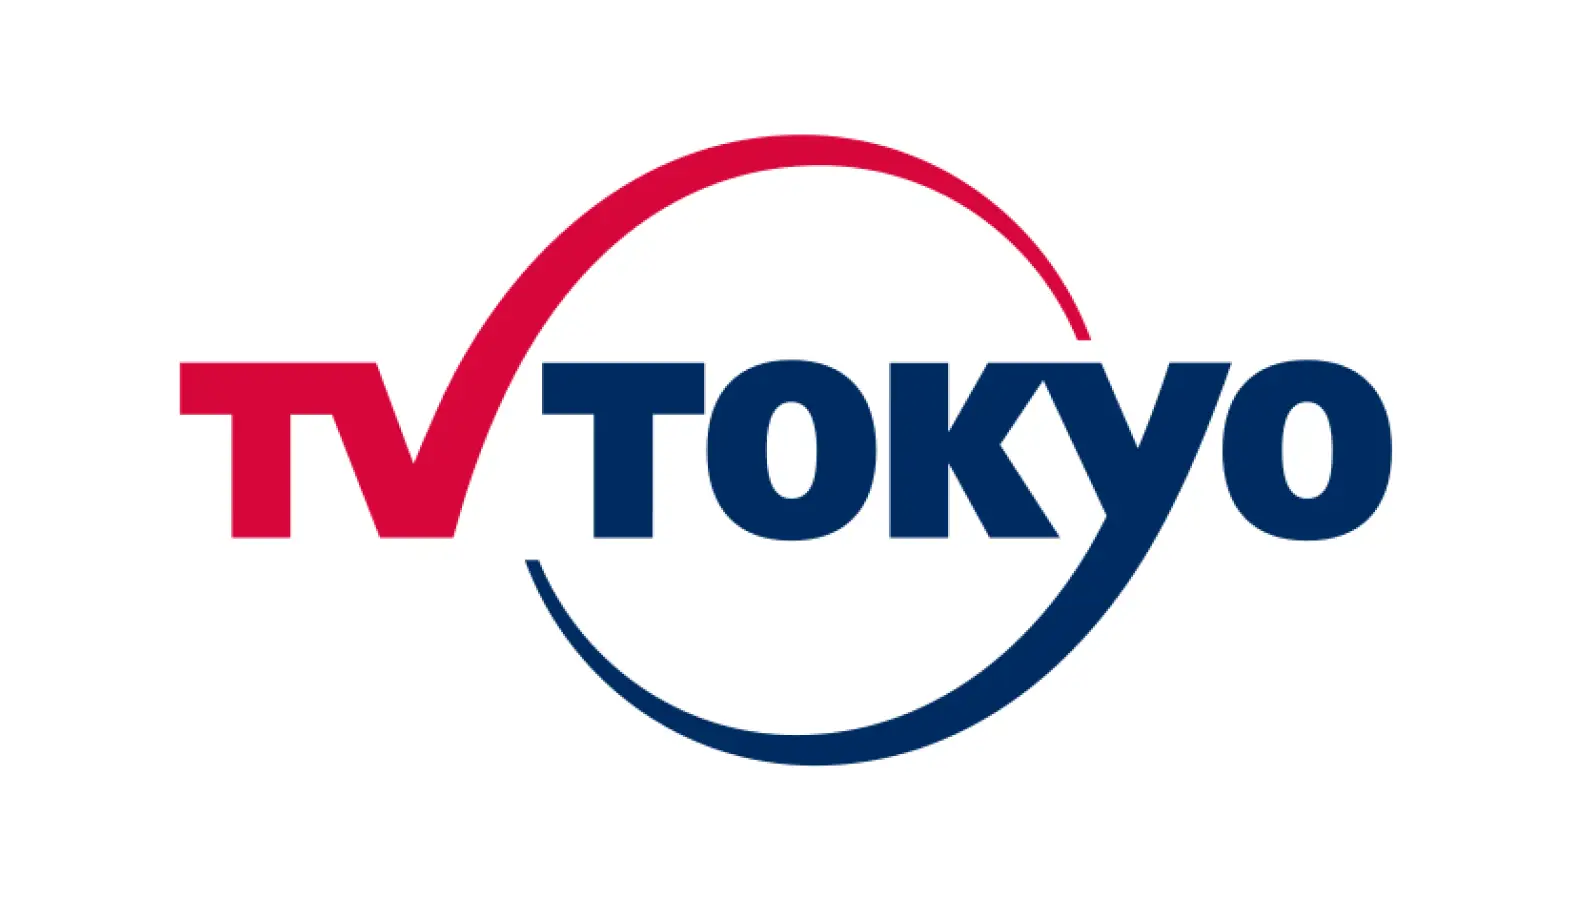 巨大企業の日本改革3.0 | テレビ東京　東京建物が再開発中のYNKエリアにヒトとつながる仕掛けアリ!!の画像